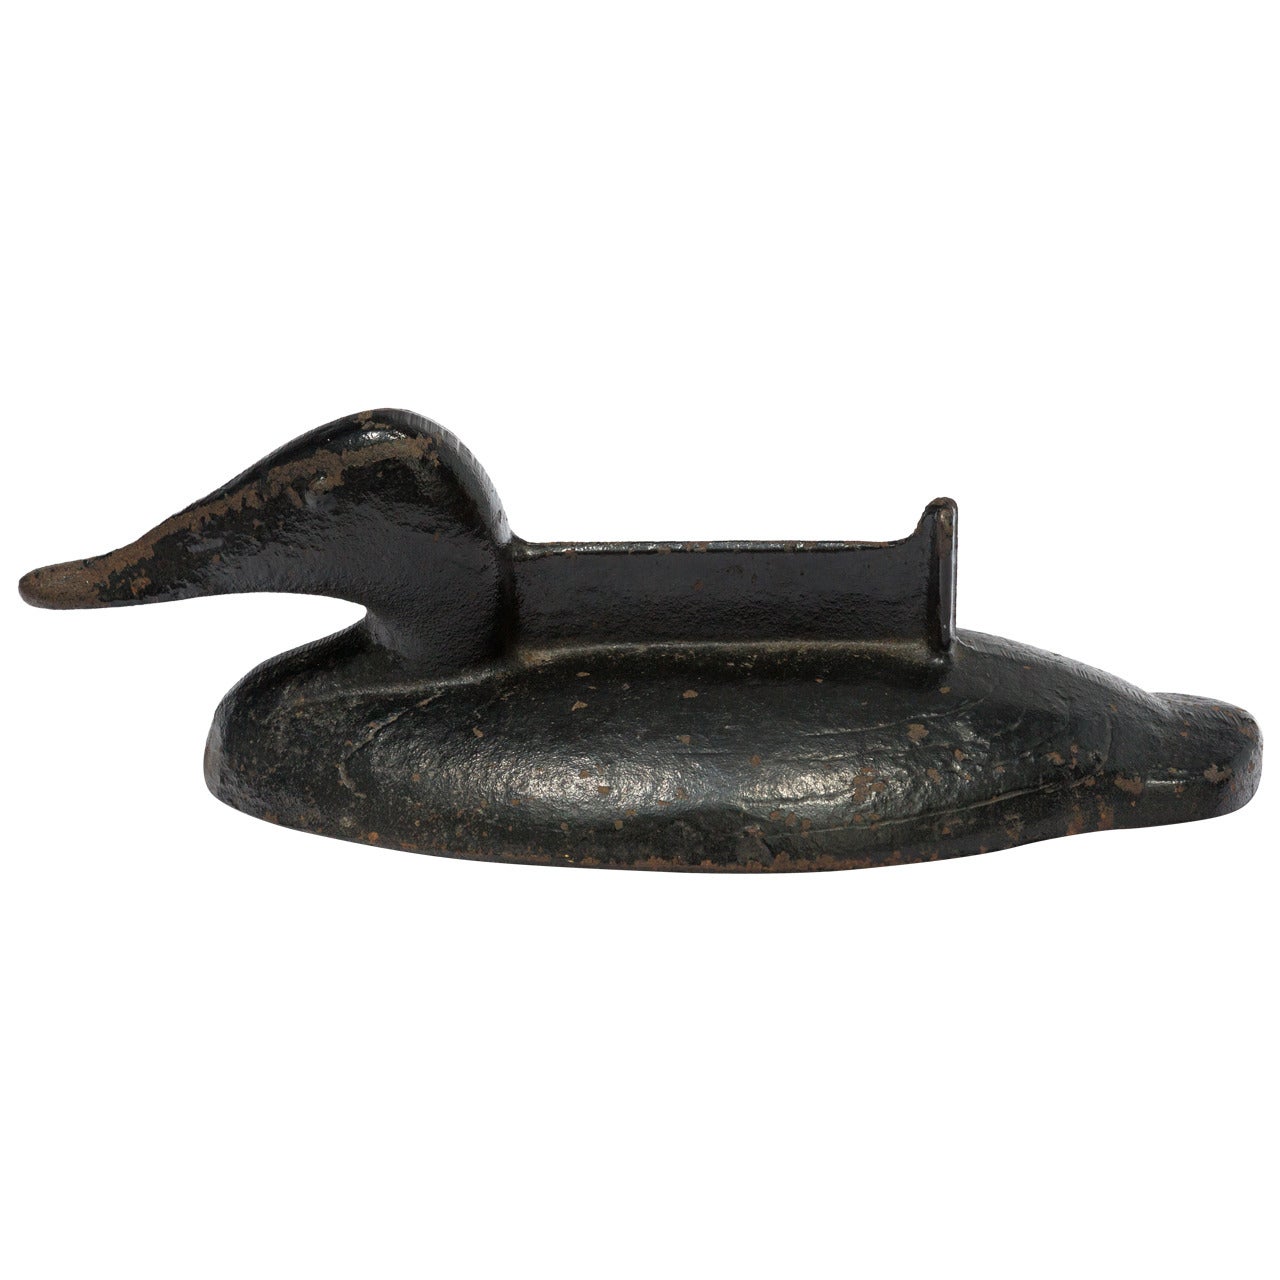 Antique Cast Iron Duck Boot Scraper